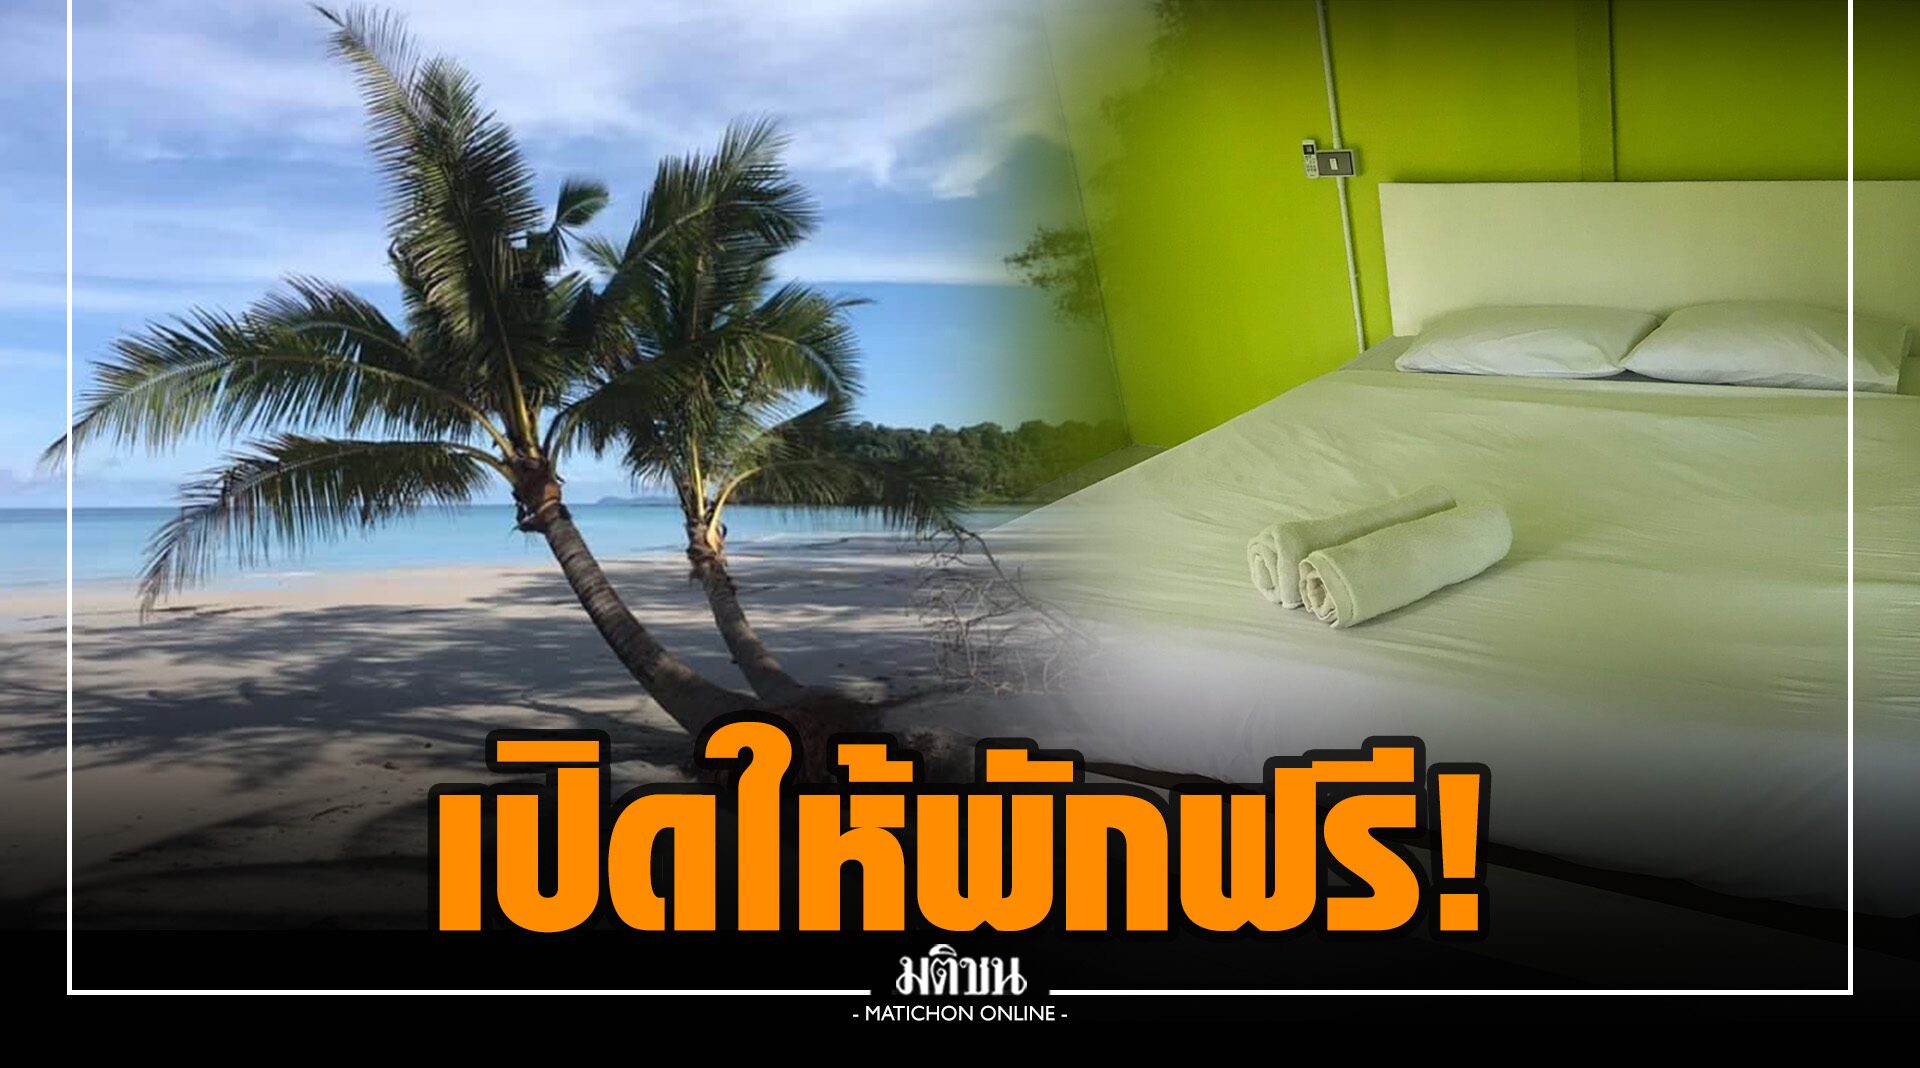 รีสอร์ทเกาะกูด จัดโปรดูดนักเที่ยว ให้พักฟรีแต่ขอแรง ทำความสะอาดที่พัก-ชายหาด